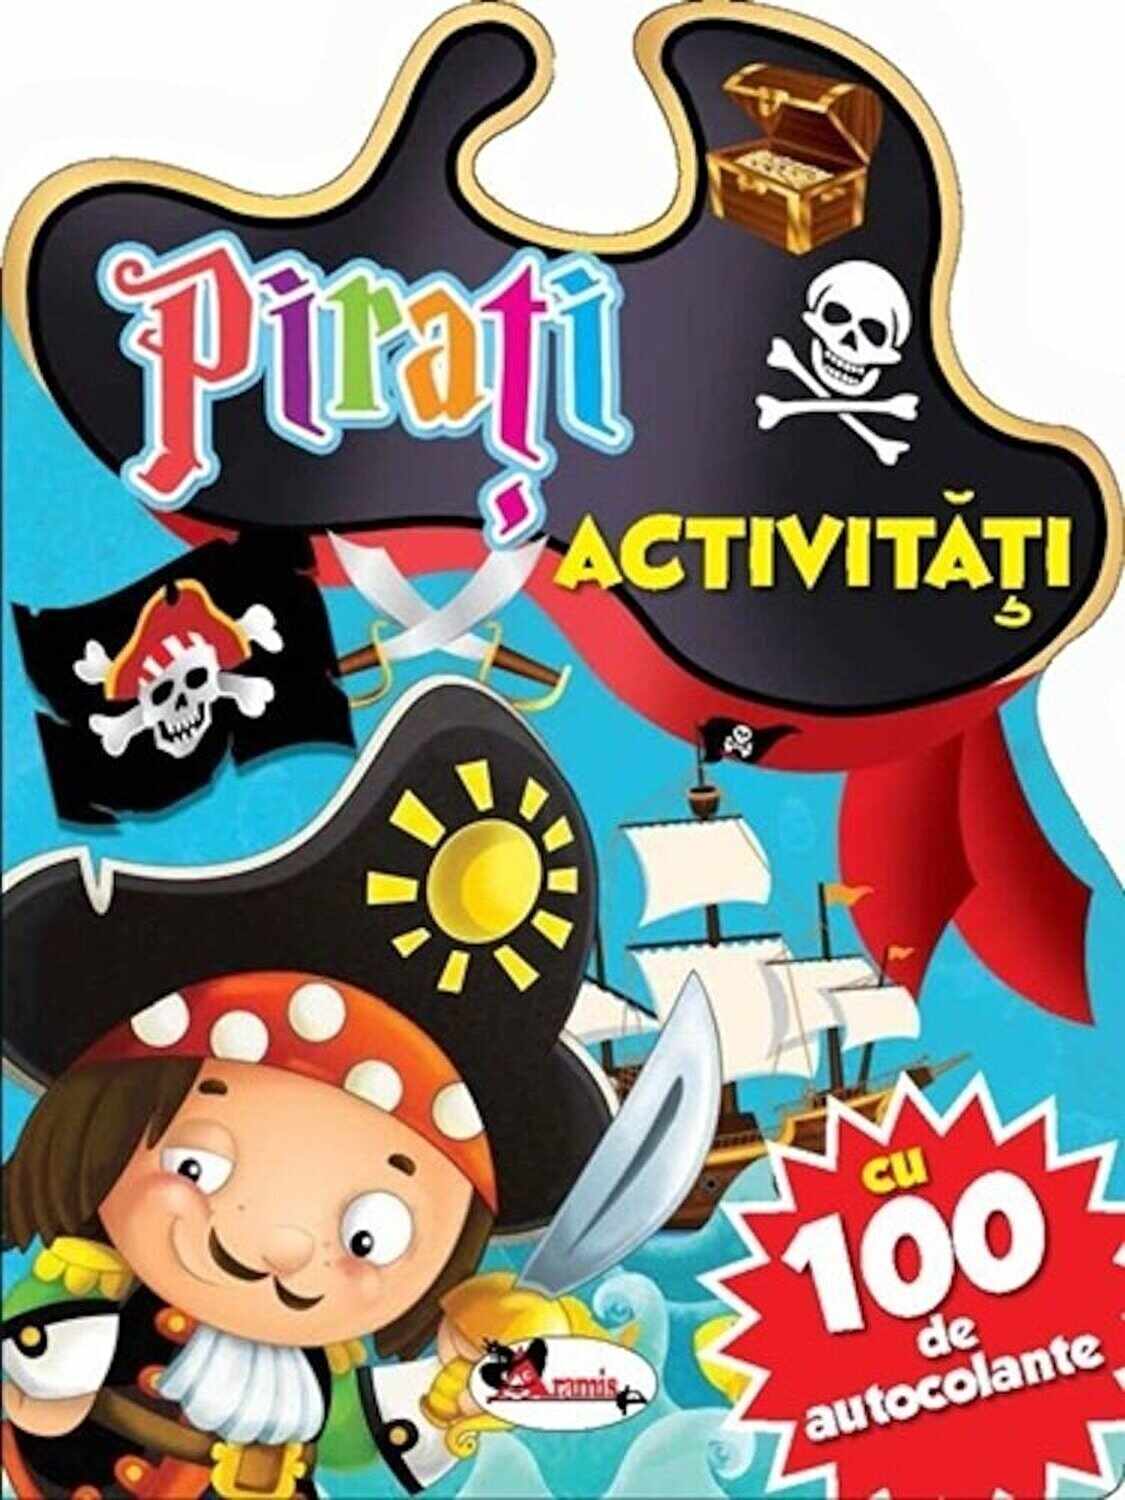 Pirati - Activitati cu 100 de autocolante | 